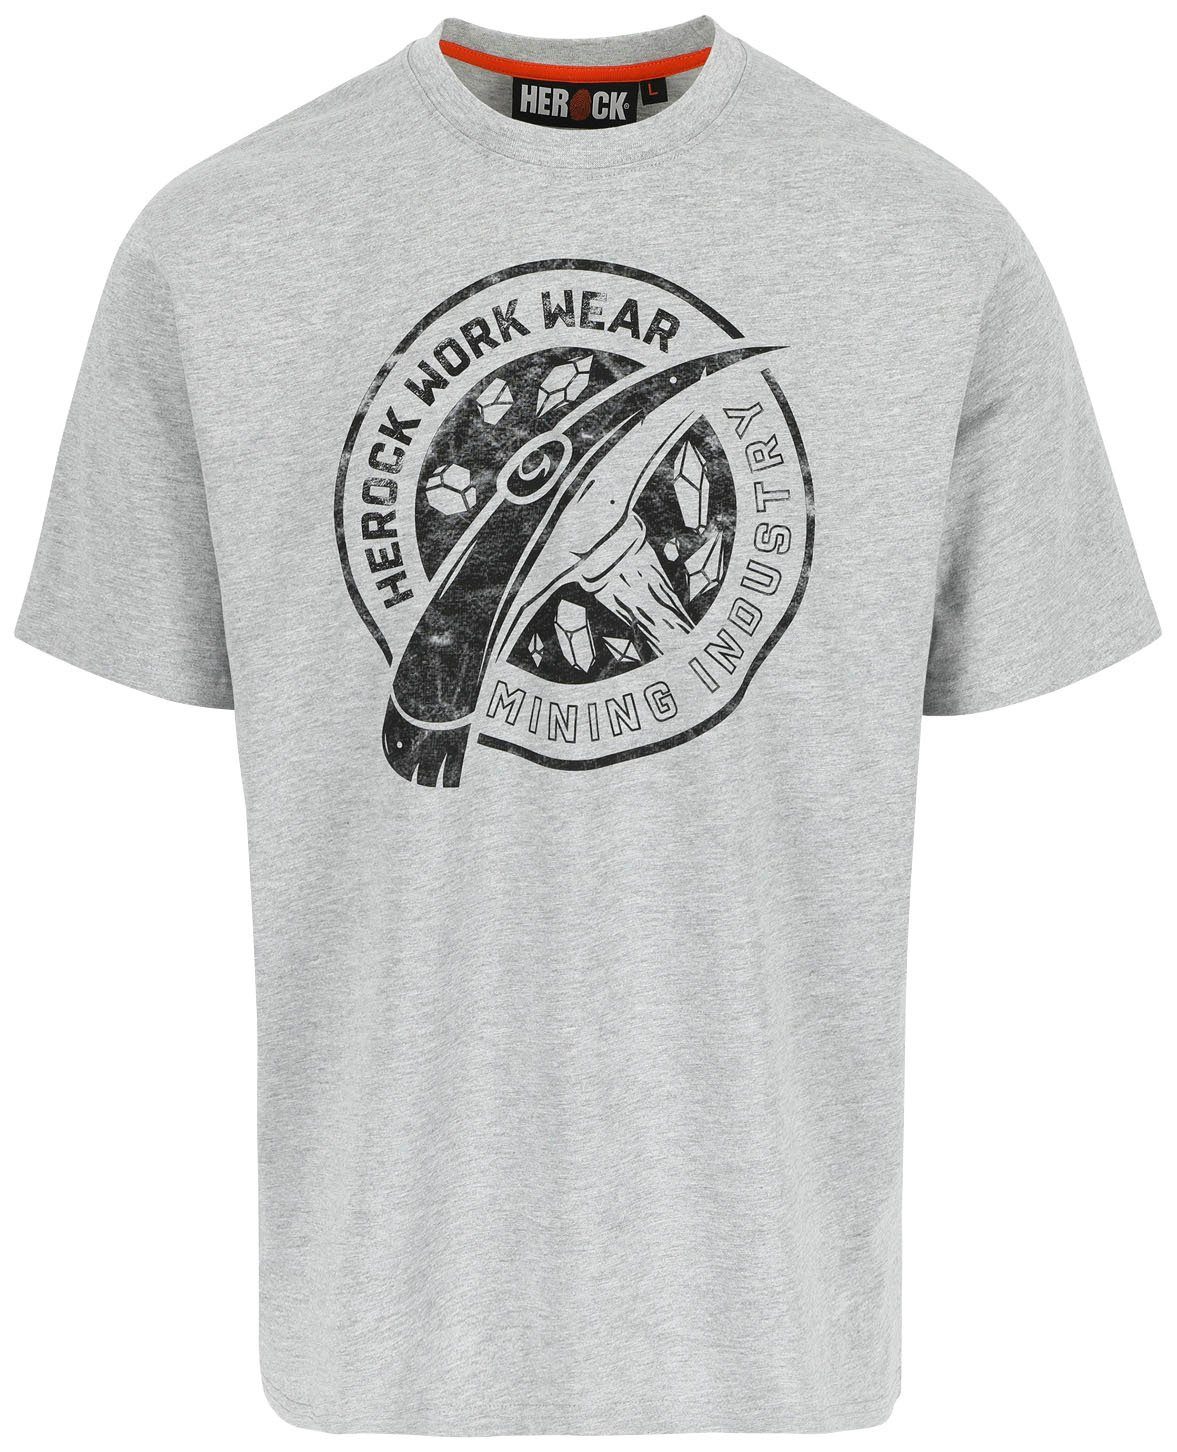 Herock T-Shirt Worker Limited Edition, erhältlich verschiedene in Farben